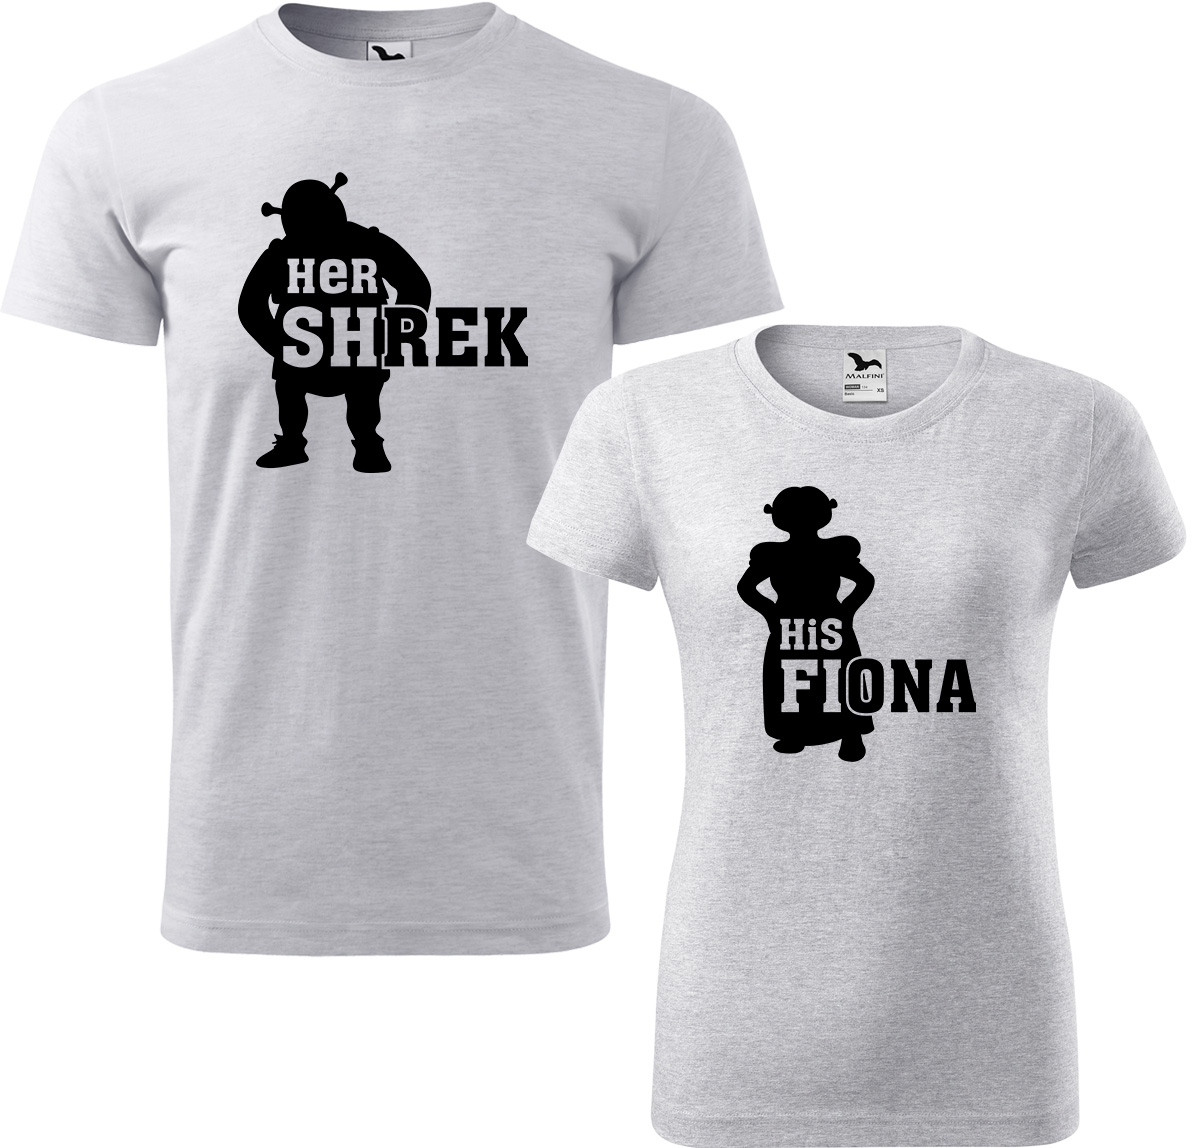 Trička pro páry - Shrek a Fiona Barva: Světle šedý melír (03), Velikost dámské tričko: 3XL, Velikost pánské tričko: 4XL